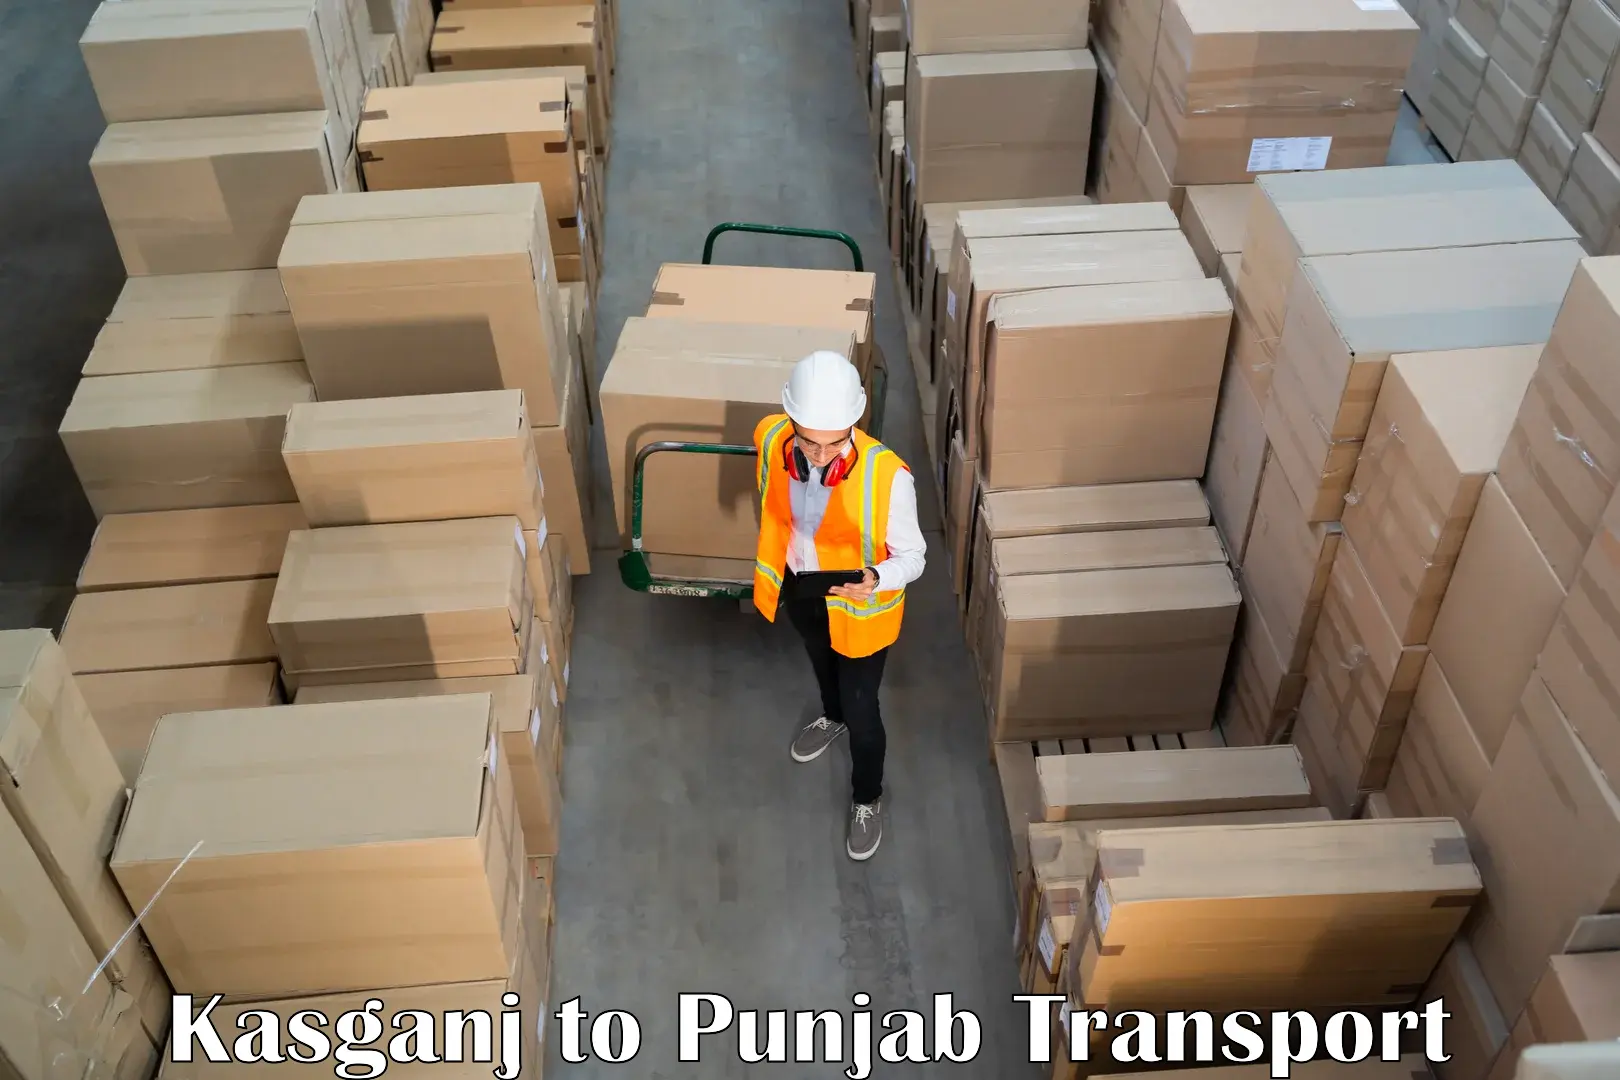 Pick up transport service in Kasganj to Fatehgarh Sahib